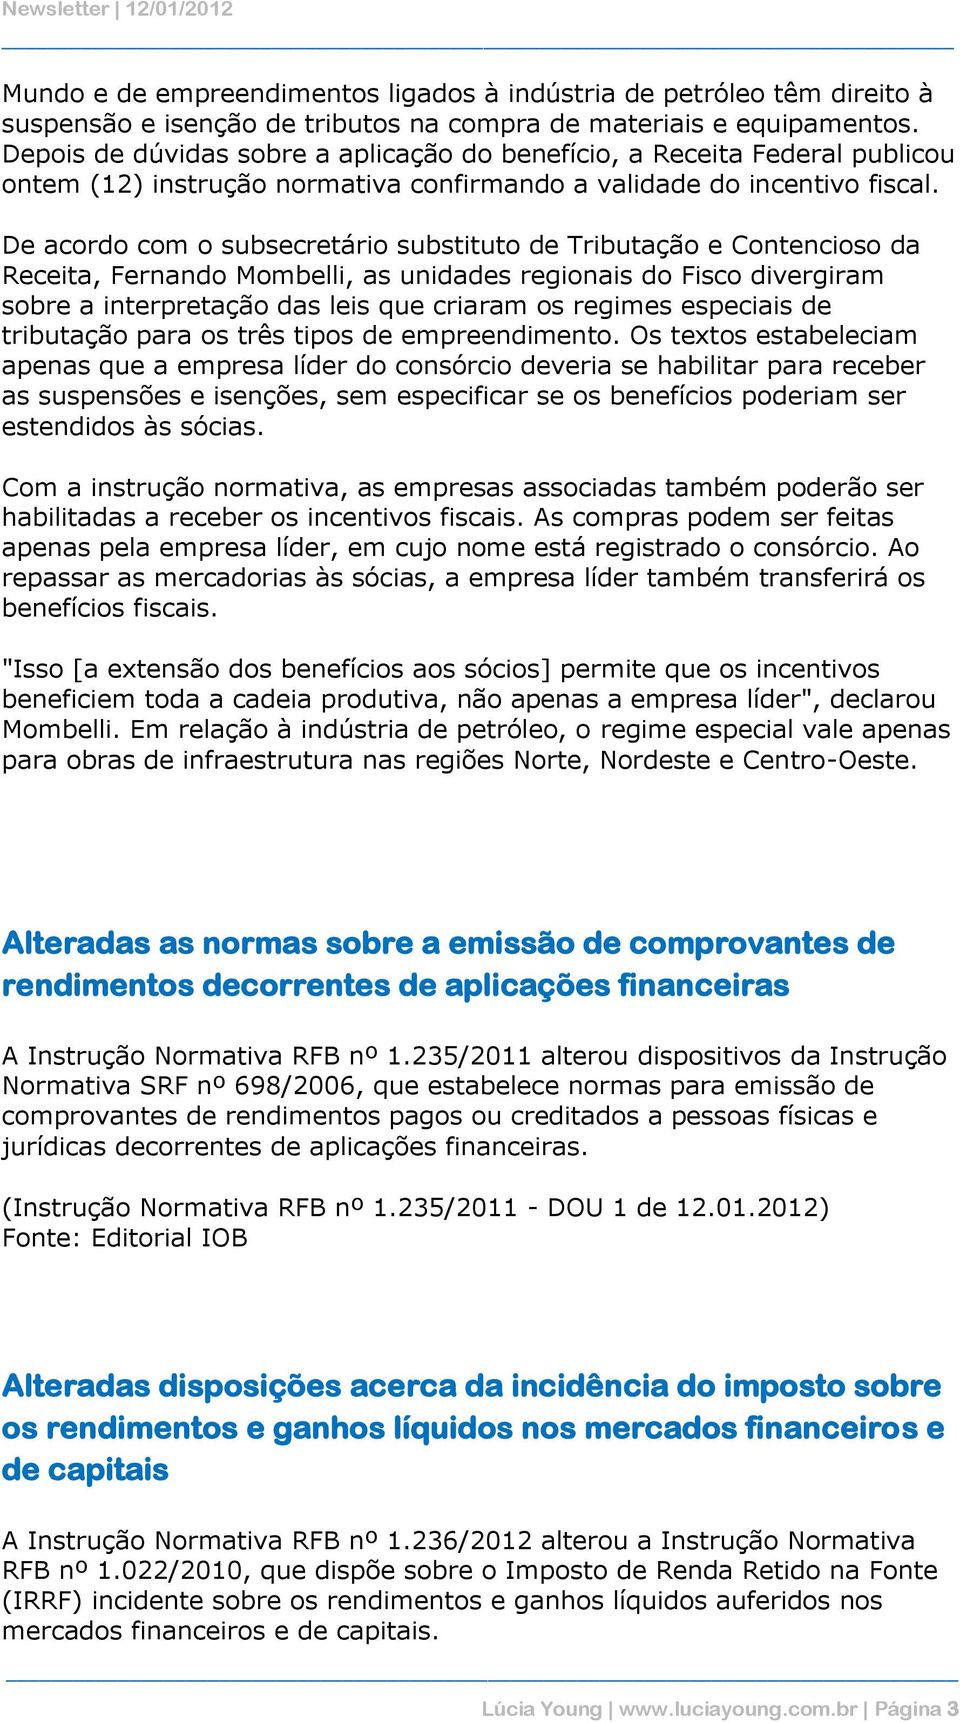 De acordo com o subsecretário substituto de Tributação e Contencioso da Receita, Fernando Mombelli, as unidades regionais do Fisco divergiram sobre a interpretação das leis que criaram os regimes